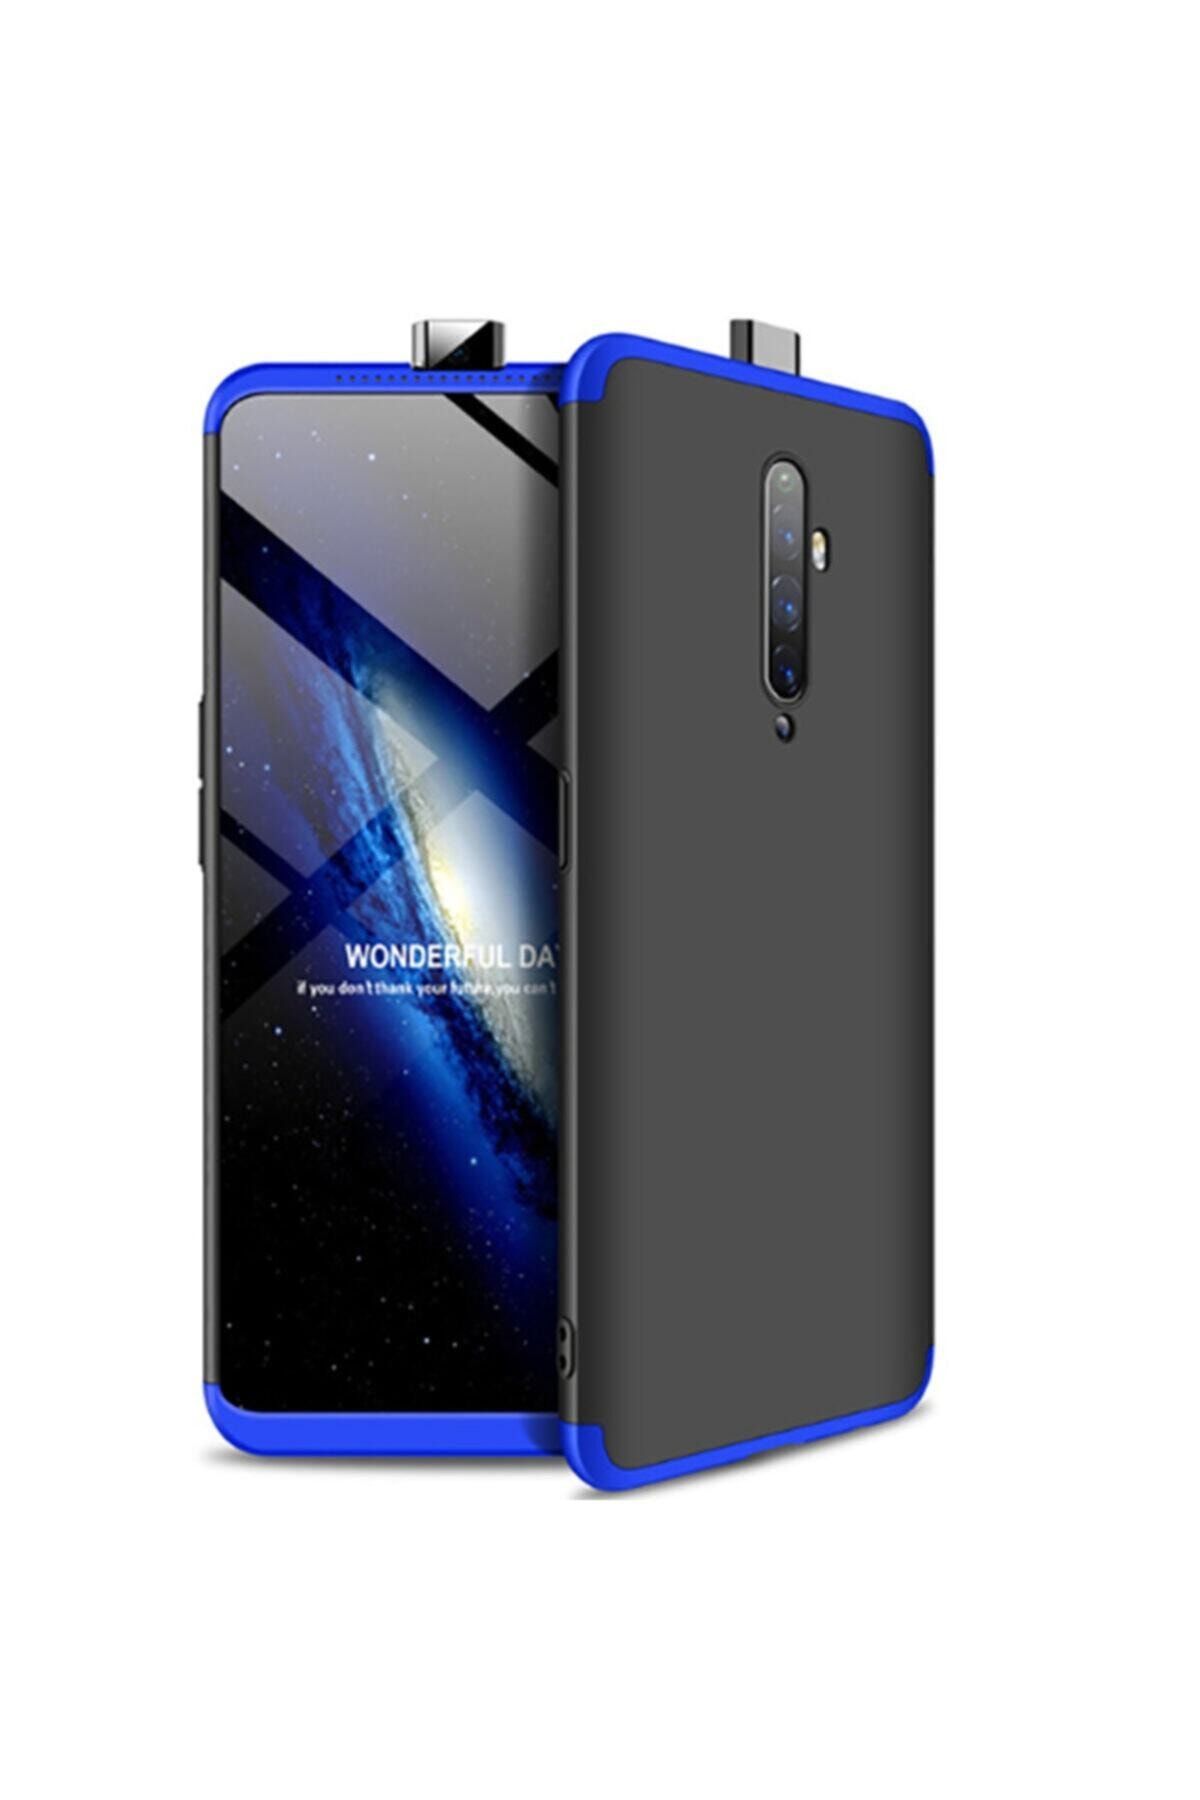 Nezih Case Oppo Oppo Reno 2z 360? Full Koruma 3 Parça Slim Fit Silikon Ays Kılıf Siyah/mavi